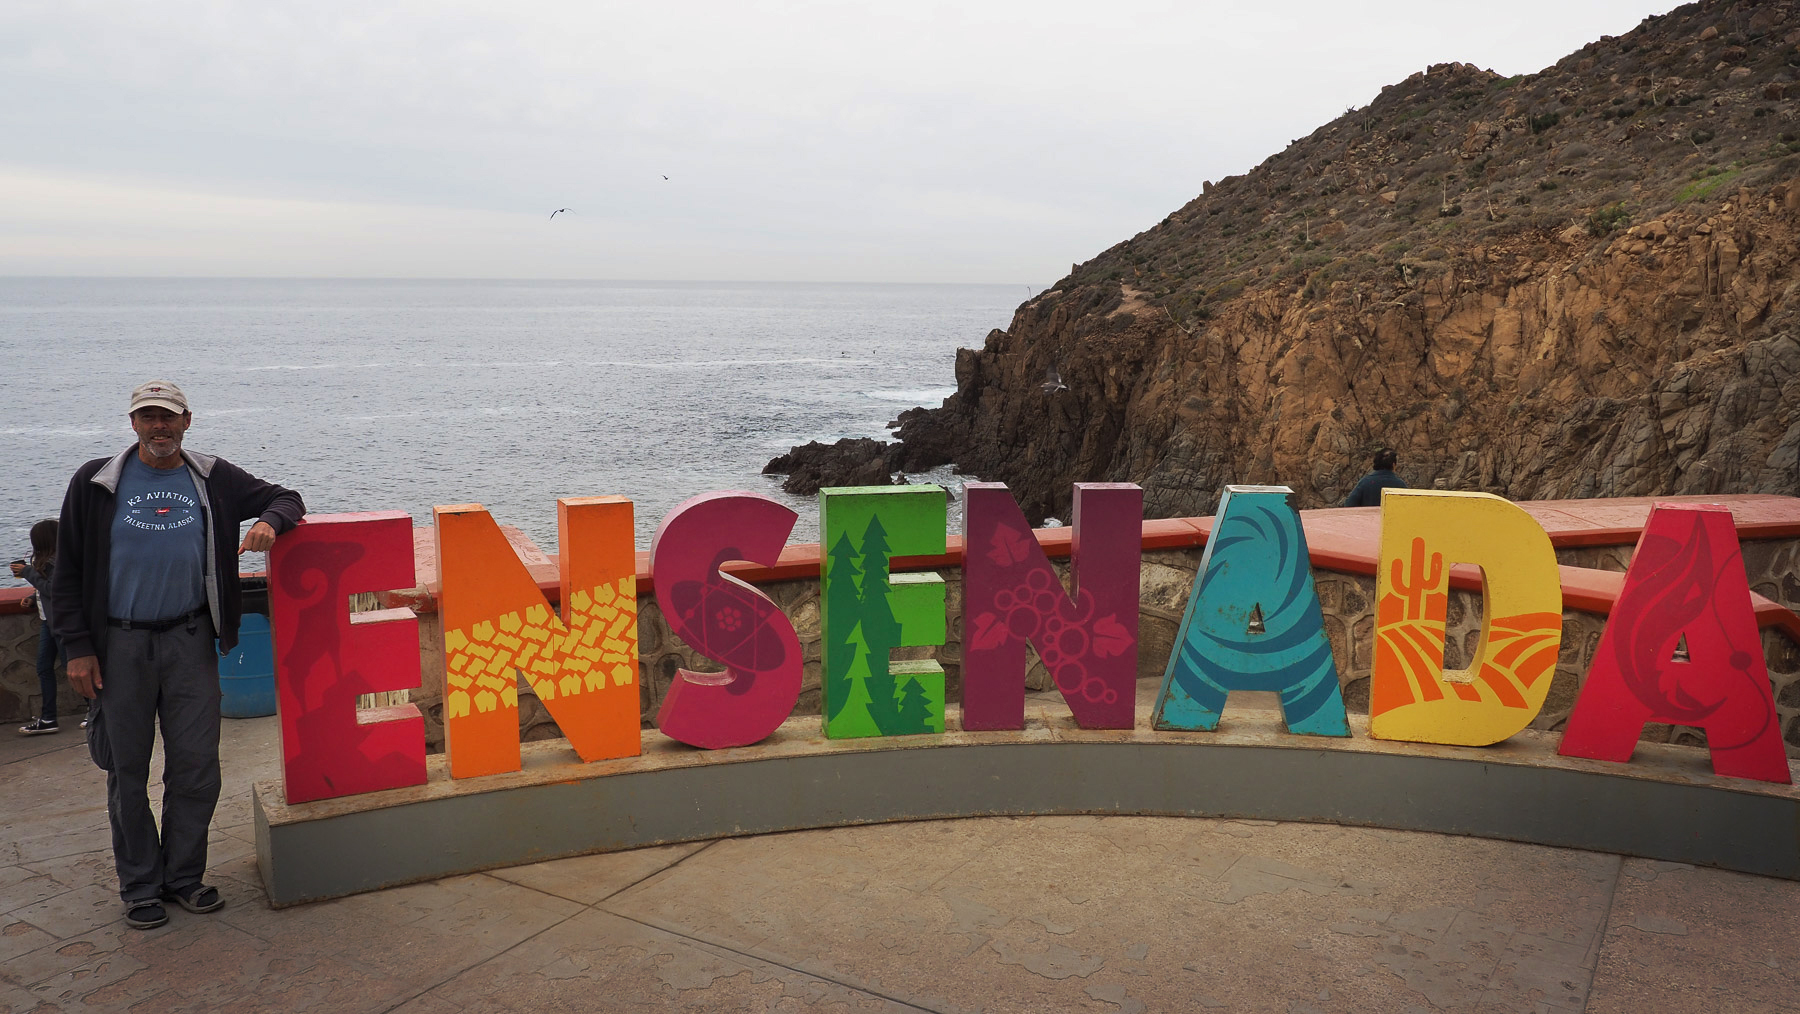 Die erste Stadt am Pazifik in Mexiko: Ensenada